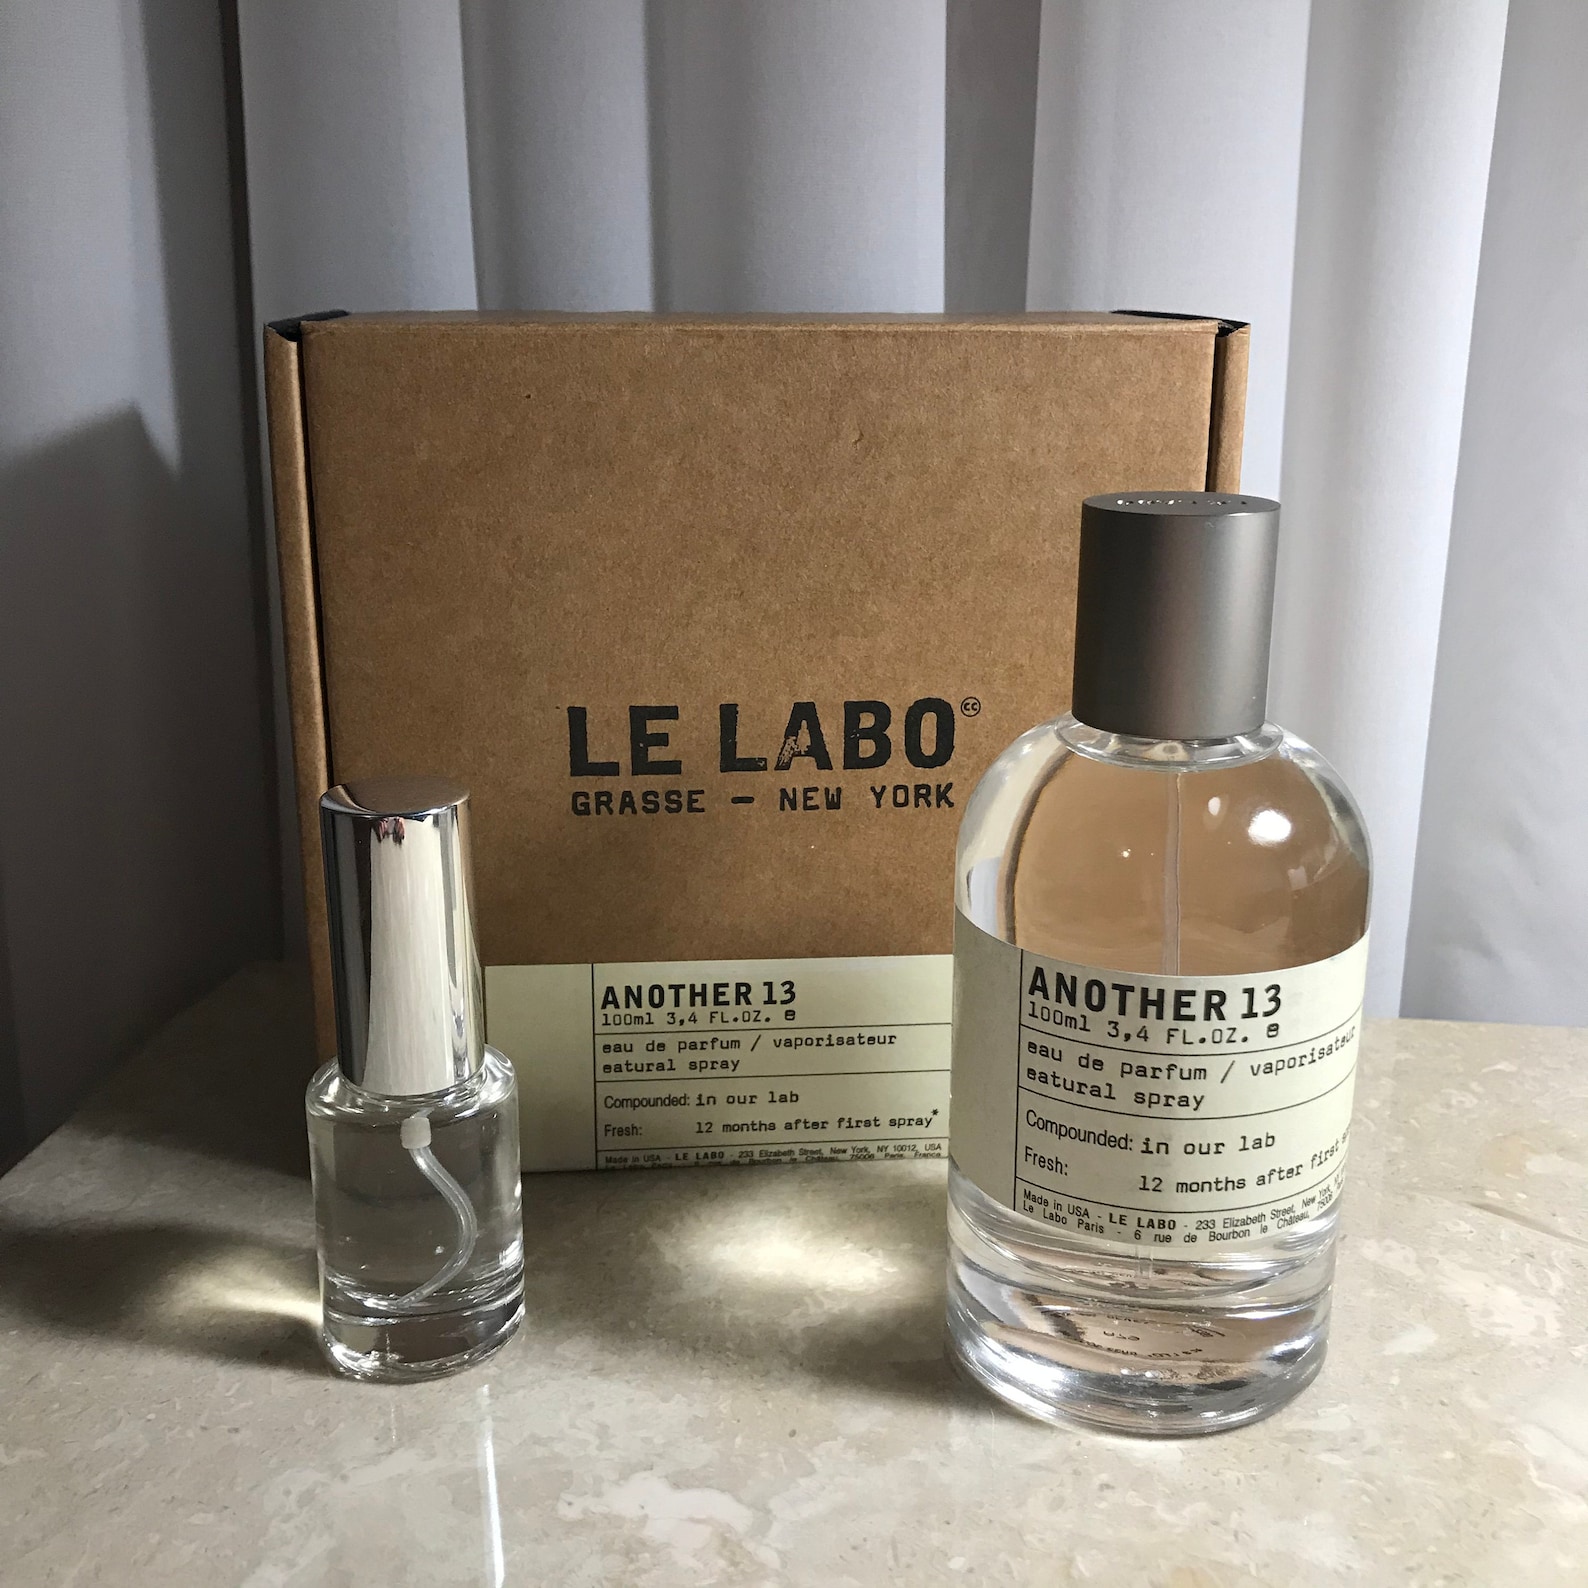 10 ml Le Labo Another 13 Eau de parfum | Etsy